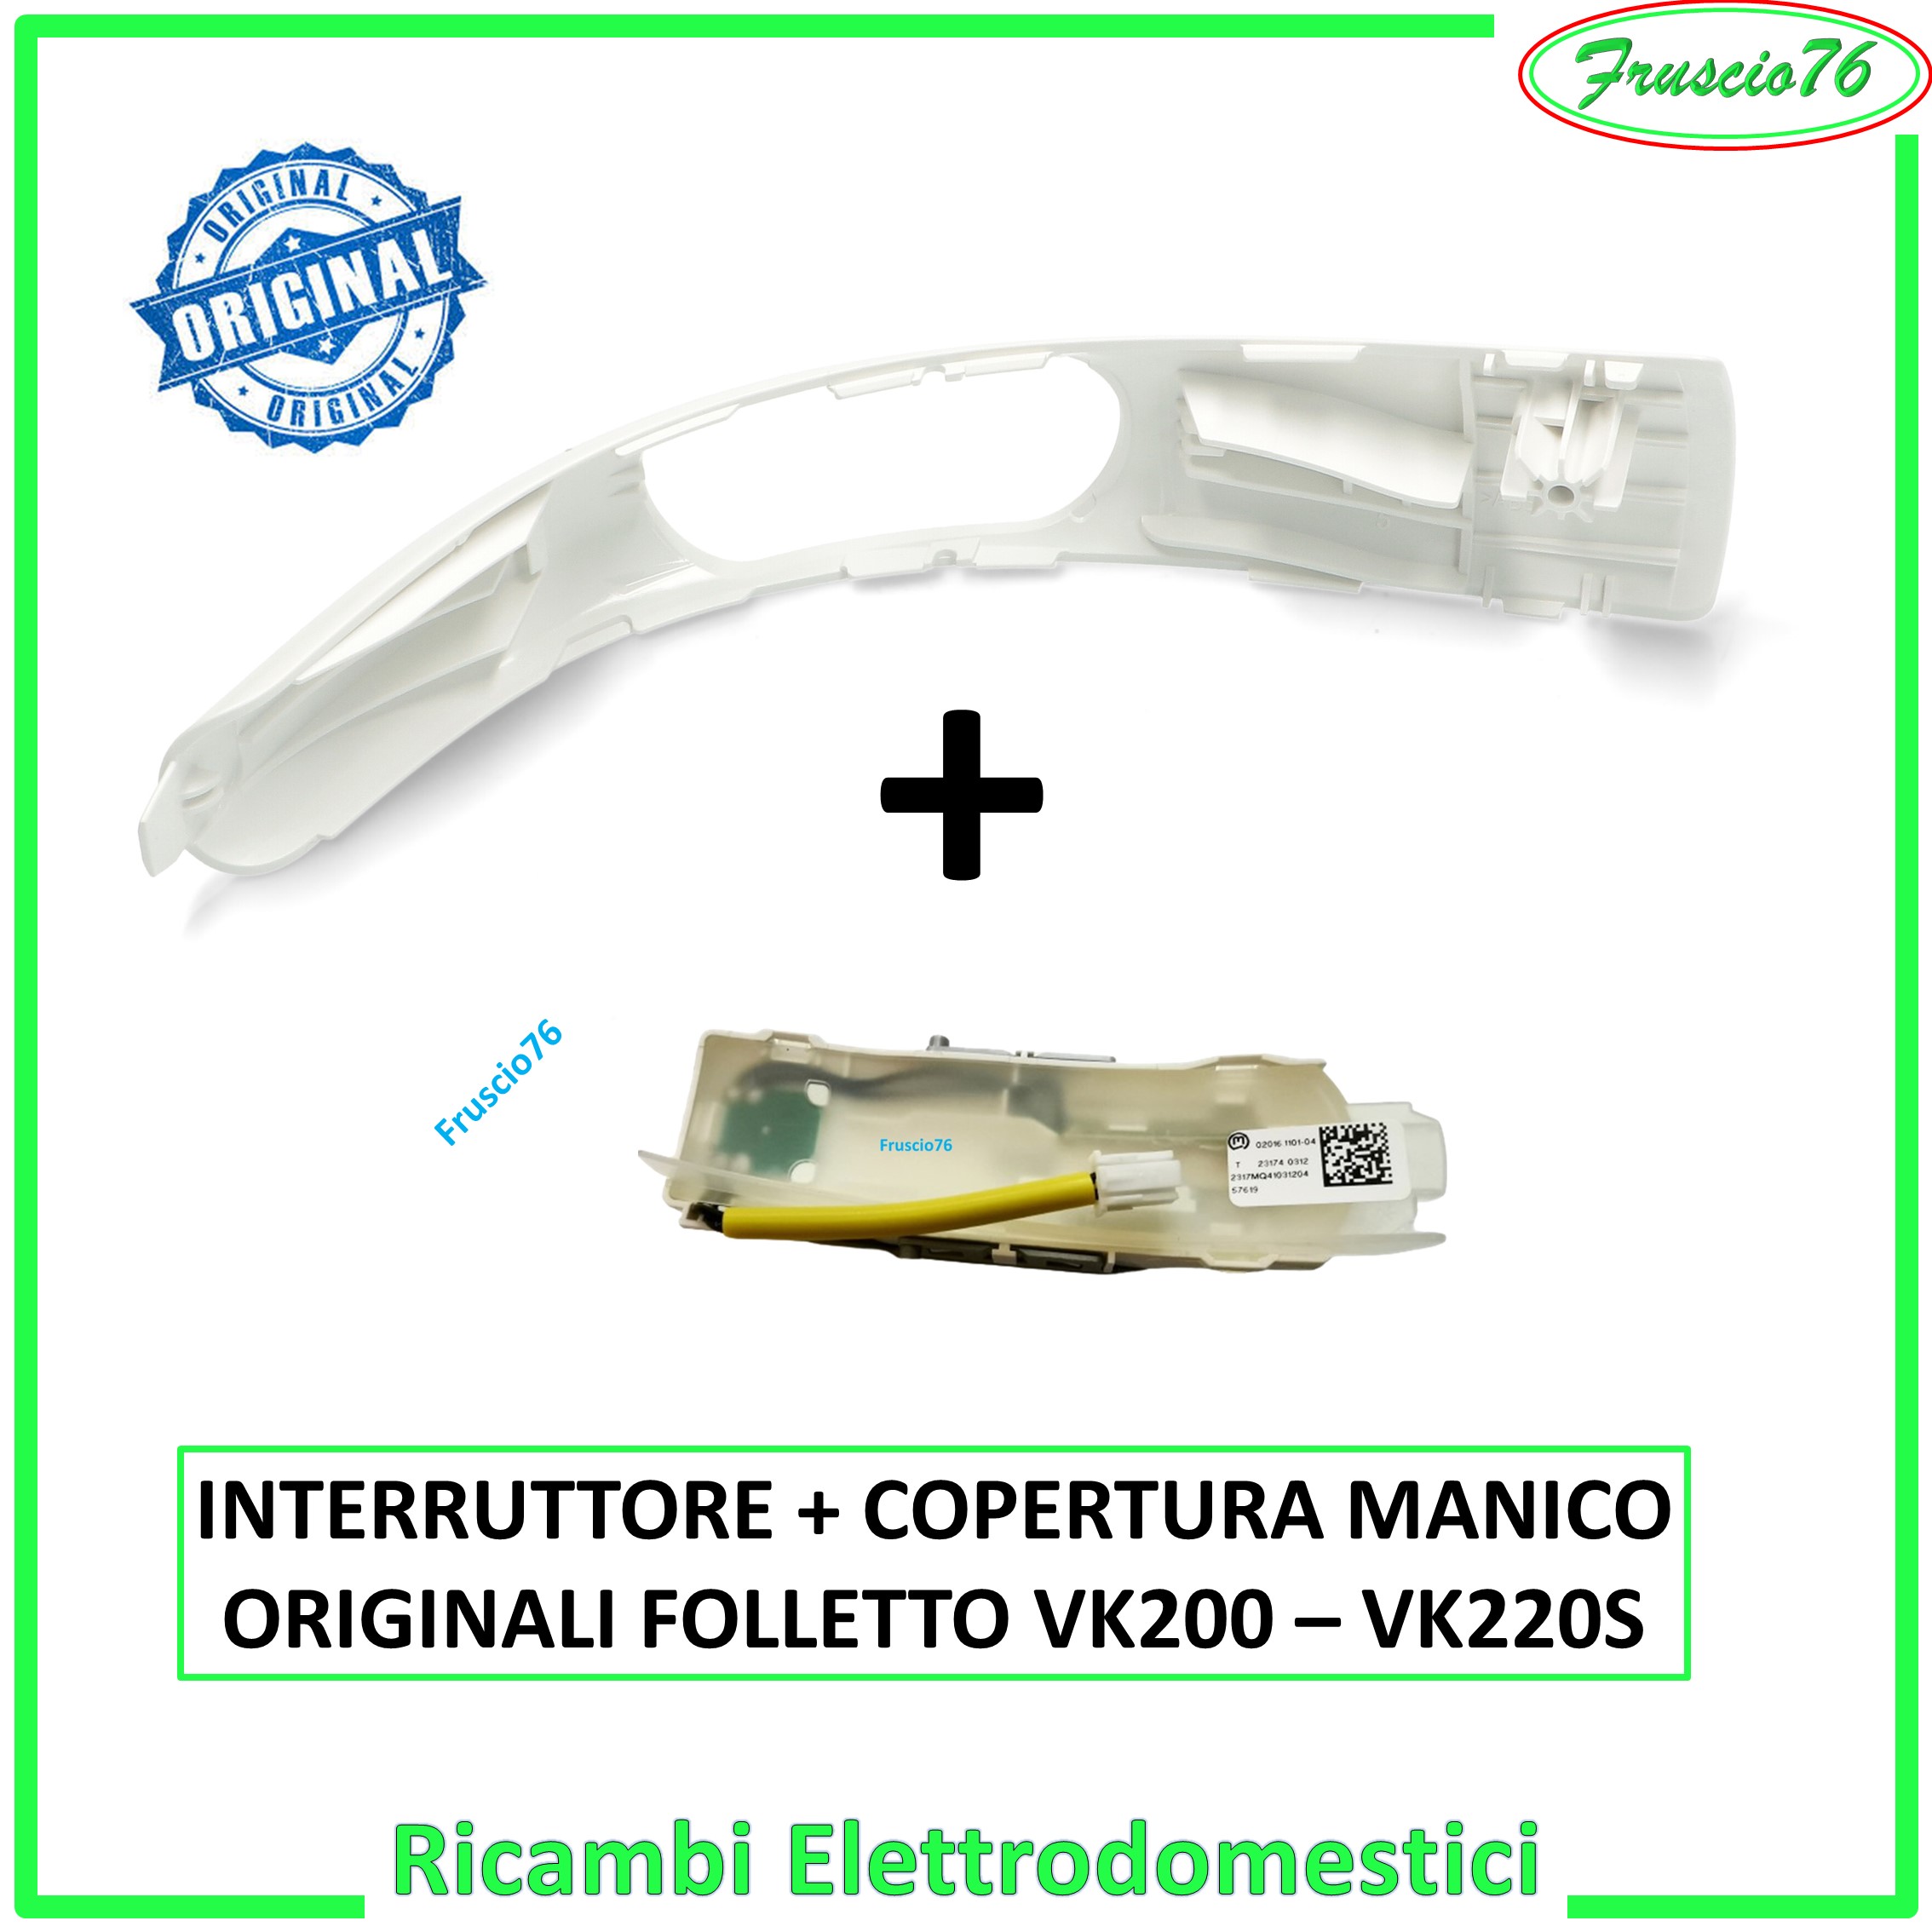 Copertura Manico Impugnatura + Interruttore Folletto VK200 VK220S Vorwerk Originali Cod. 32415 e Cod. 32414